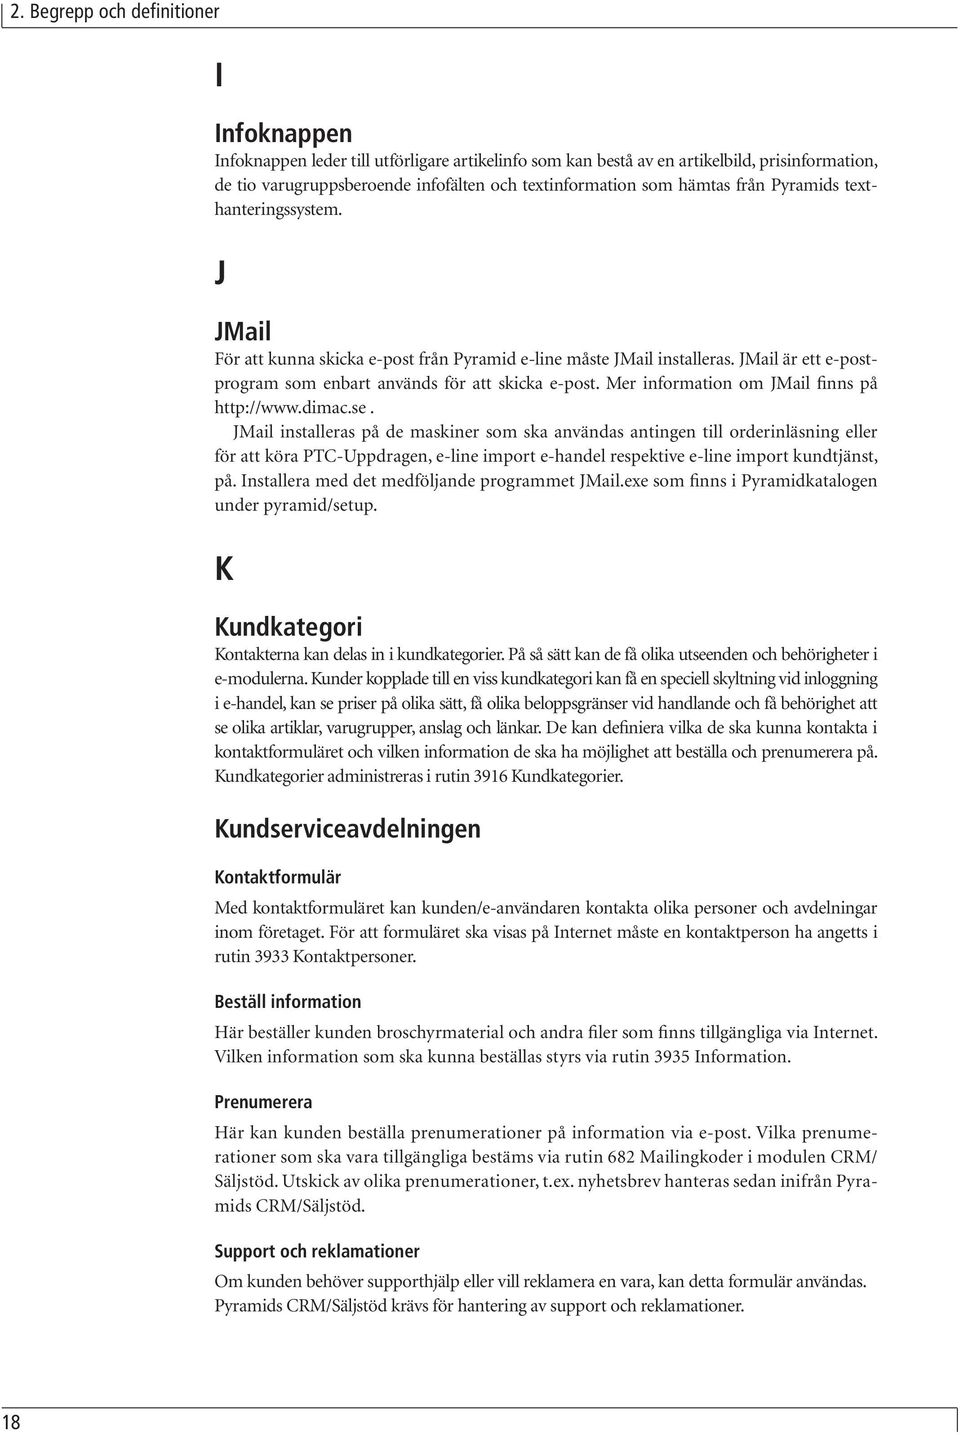 Mer information om JMail finns på http://www.dimac.se.